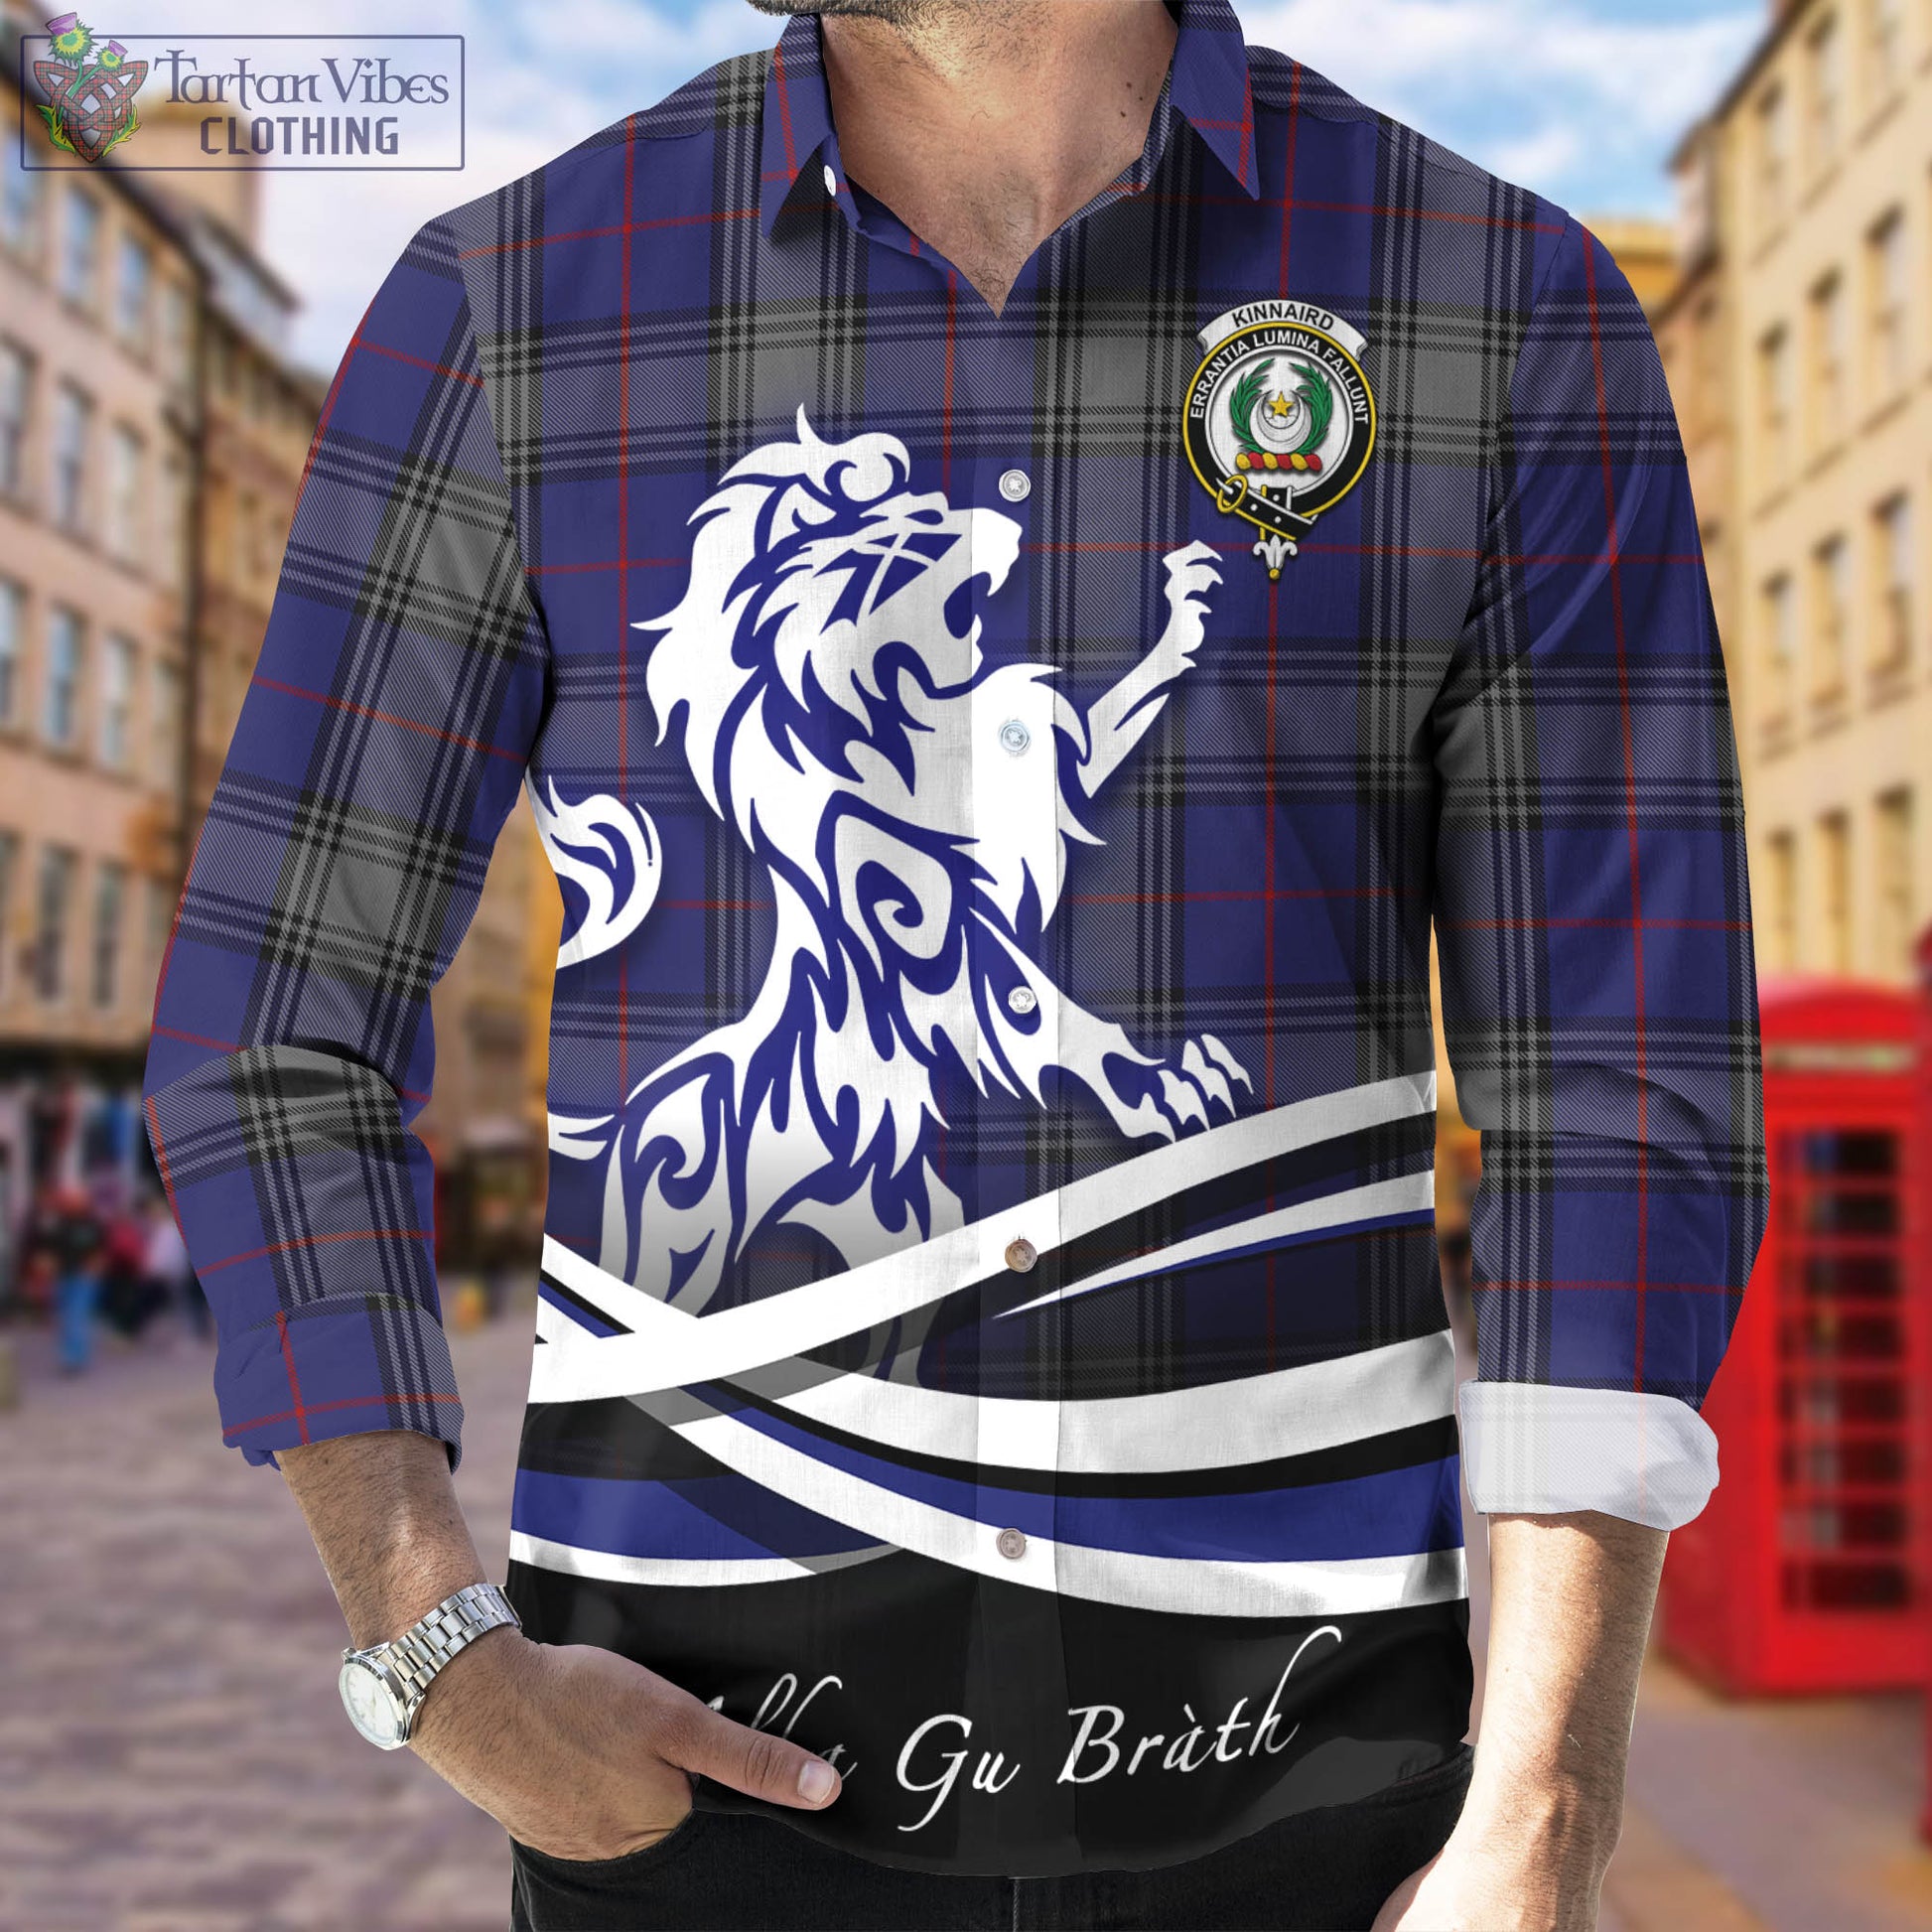 kinnaird-tartan-long-sleeve-button-up-shirt-with-alba-gu-brath-regal-lion-emblem